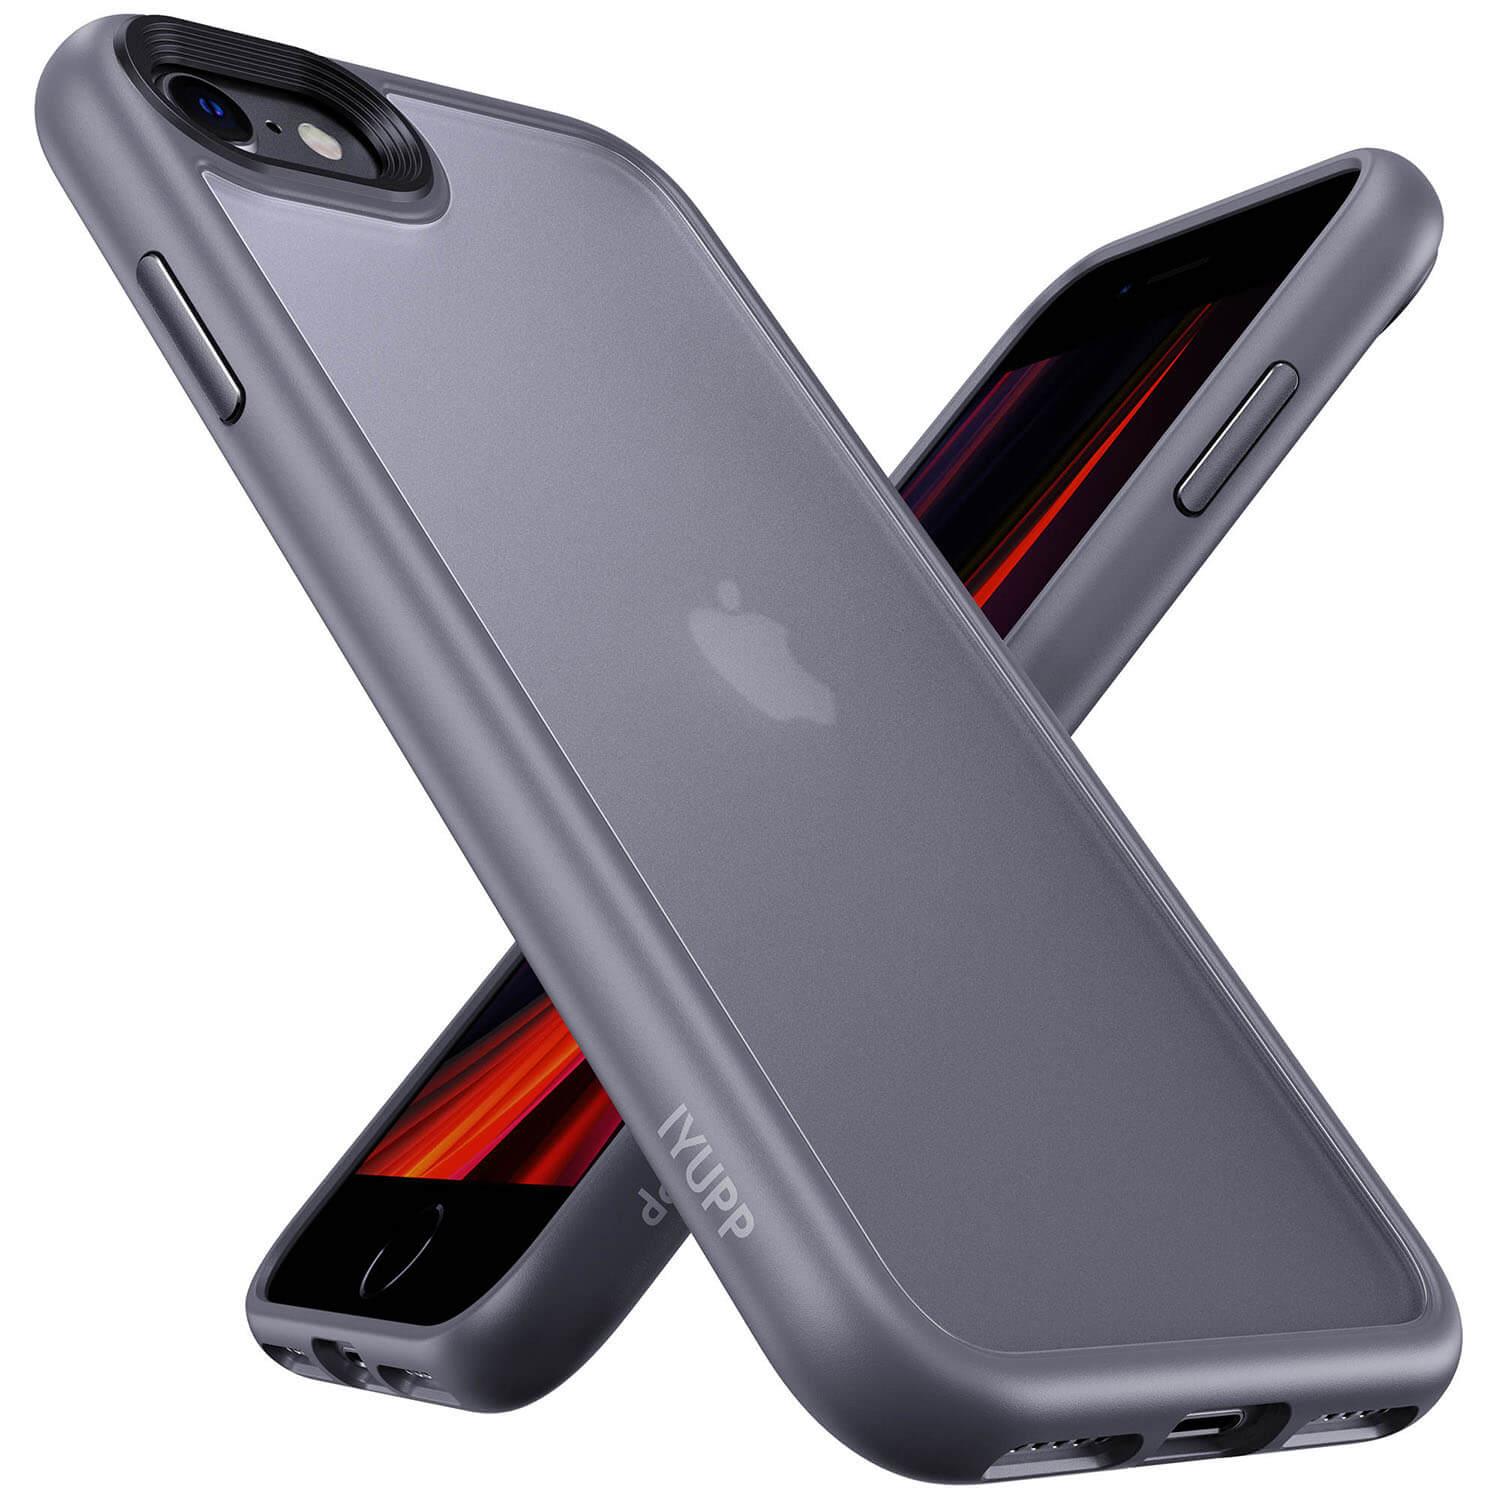 Vallen glans Tegen de wil iPhone 7 hoesjes en cases - IYUPP - iPhone 7 hoesje nodig?